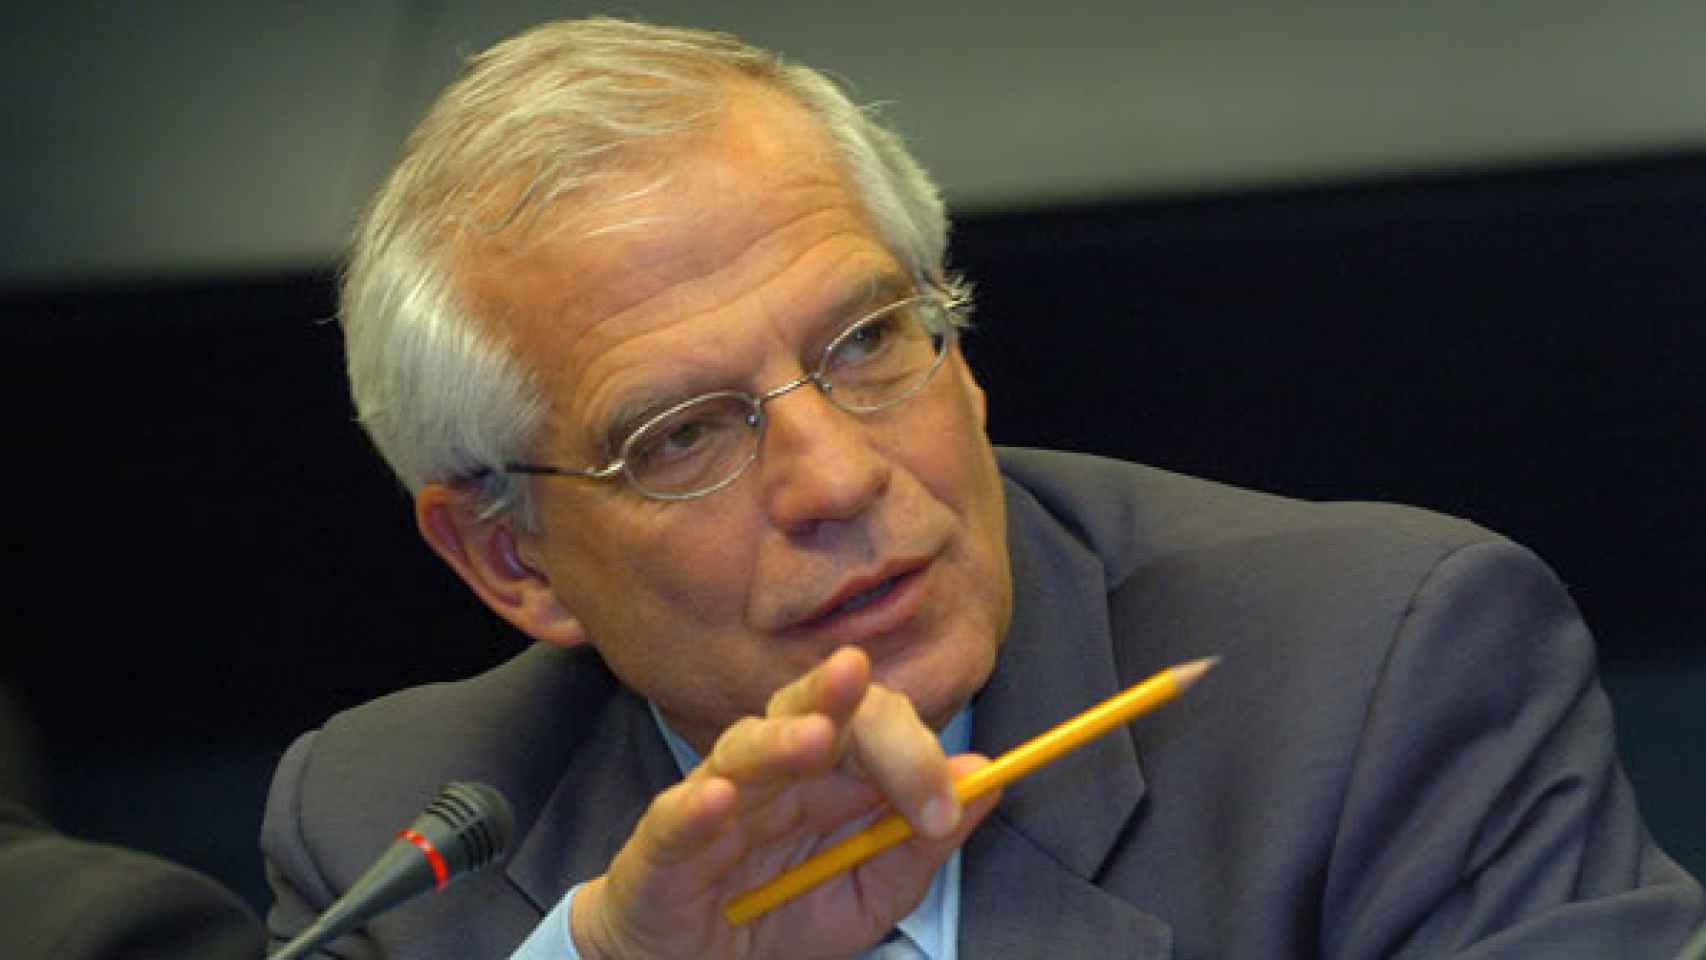 El exministro de Obras Públicas y expresidente del Parlamento Josep Borrell, en una imagen de archivo / EFE